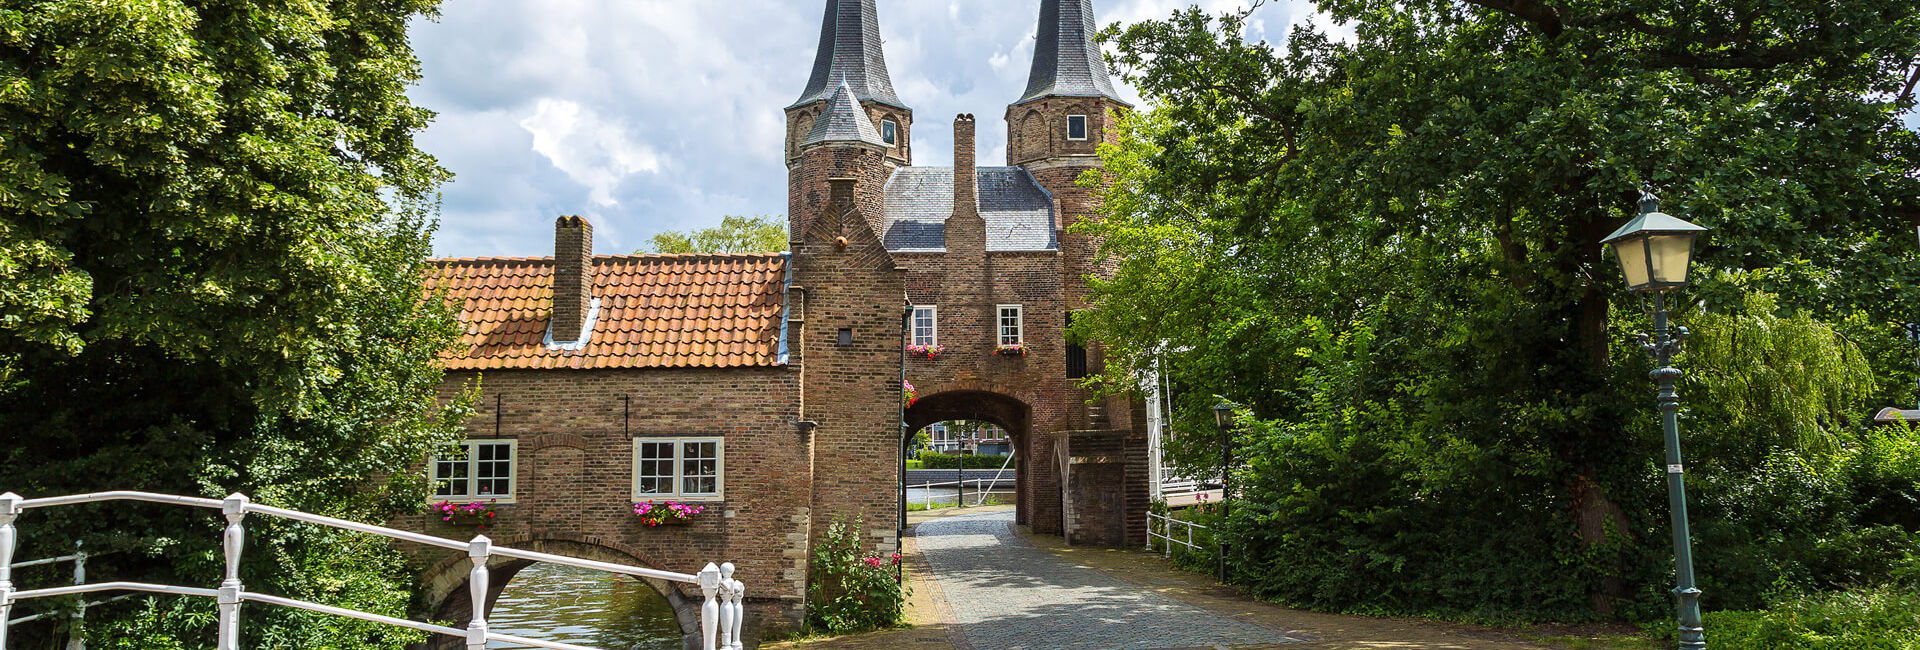 The other side of The Oostpoort Delft - Explore Delft Gasterij 't Karrewiel